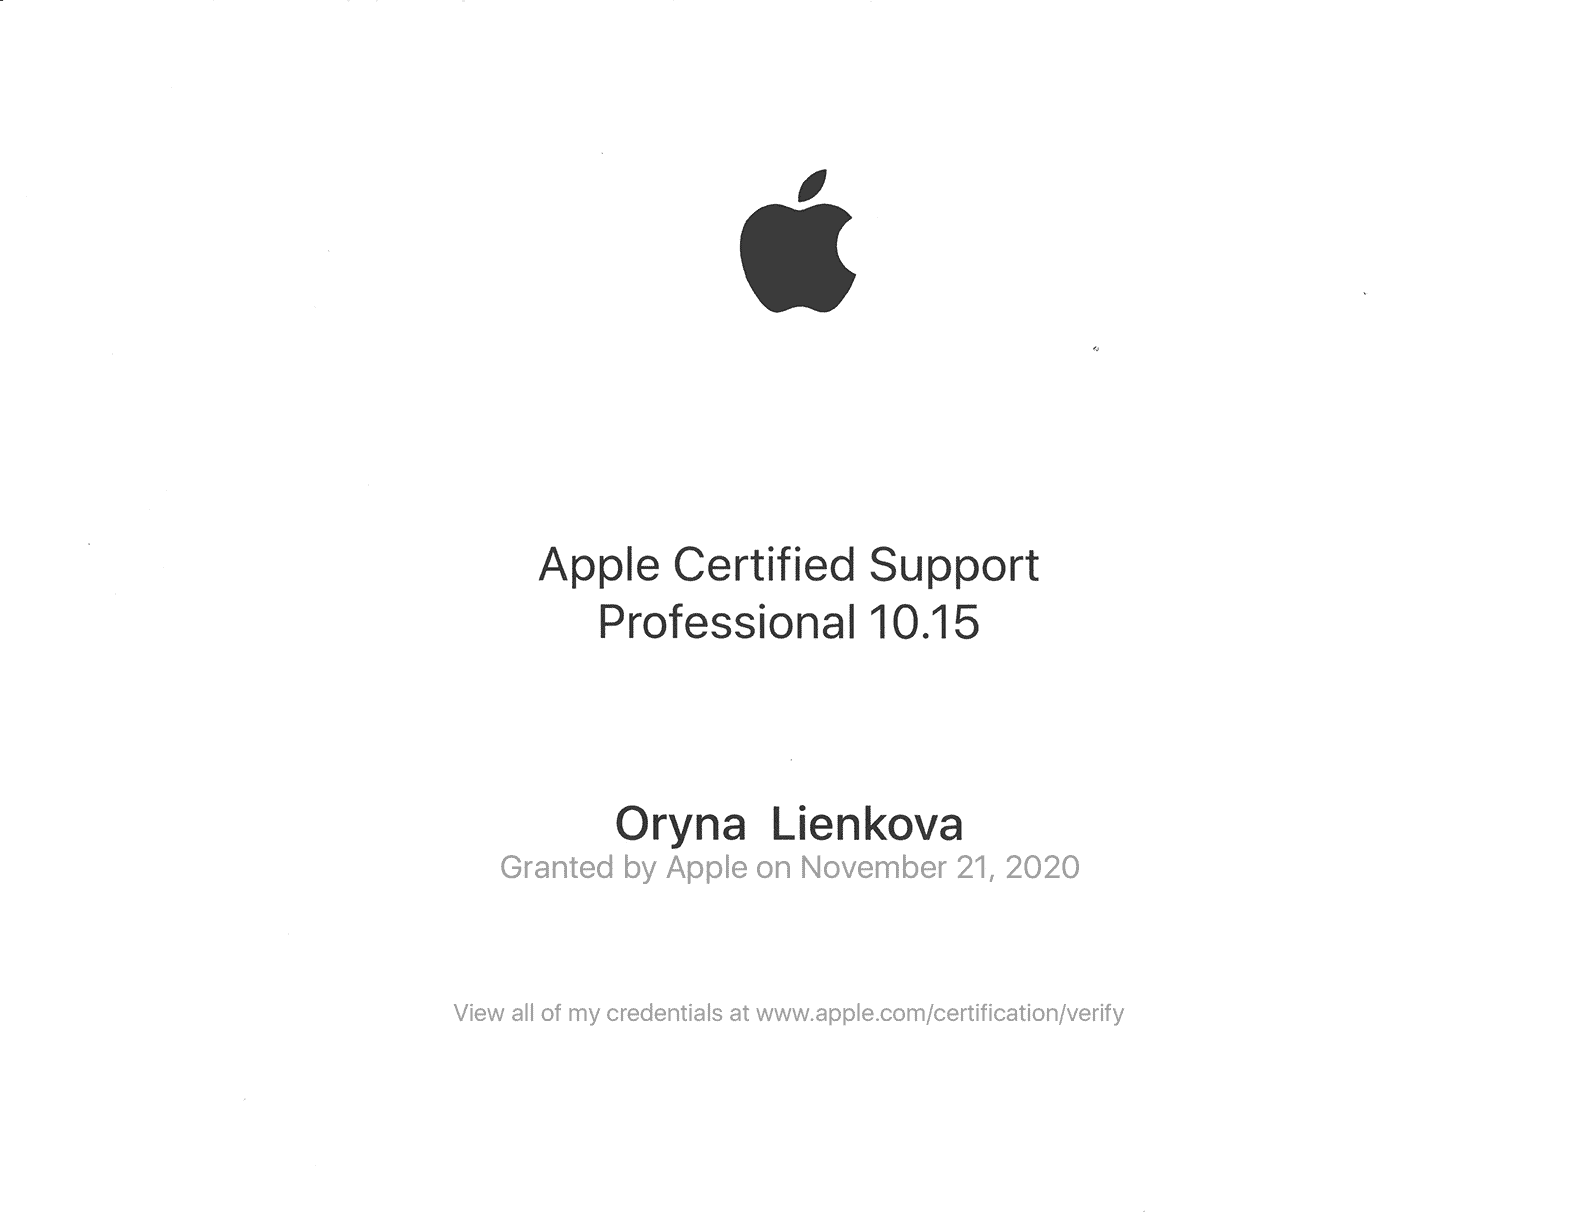 Apple certificate Oryna Lienkova